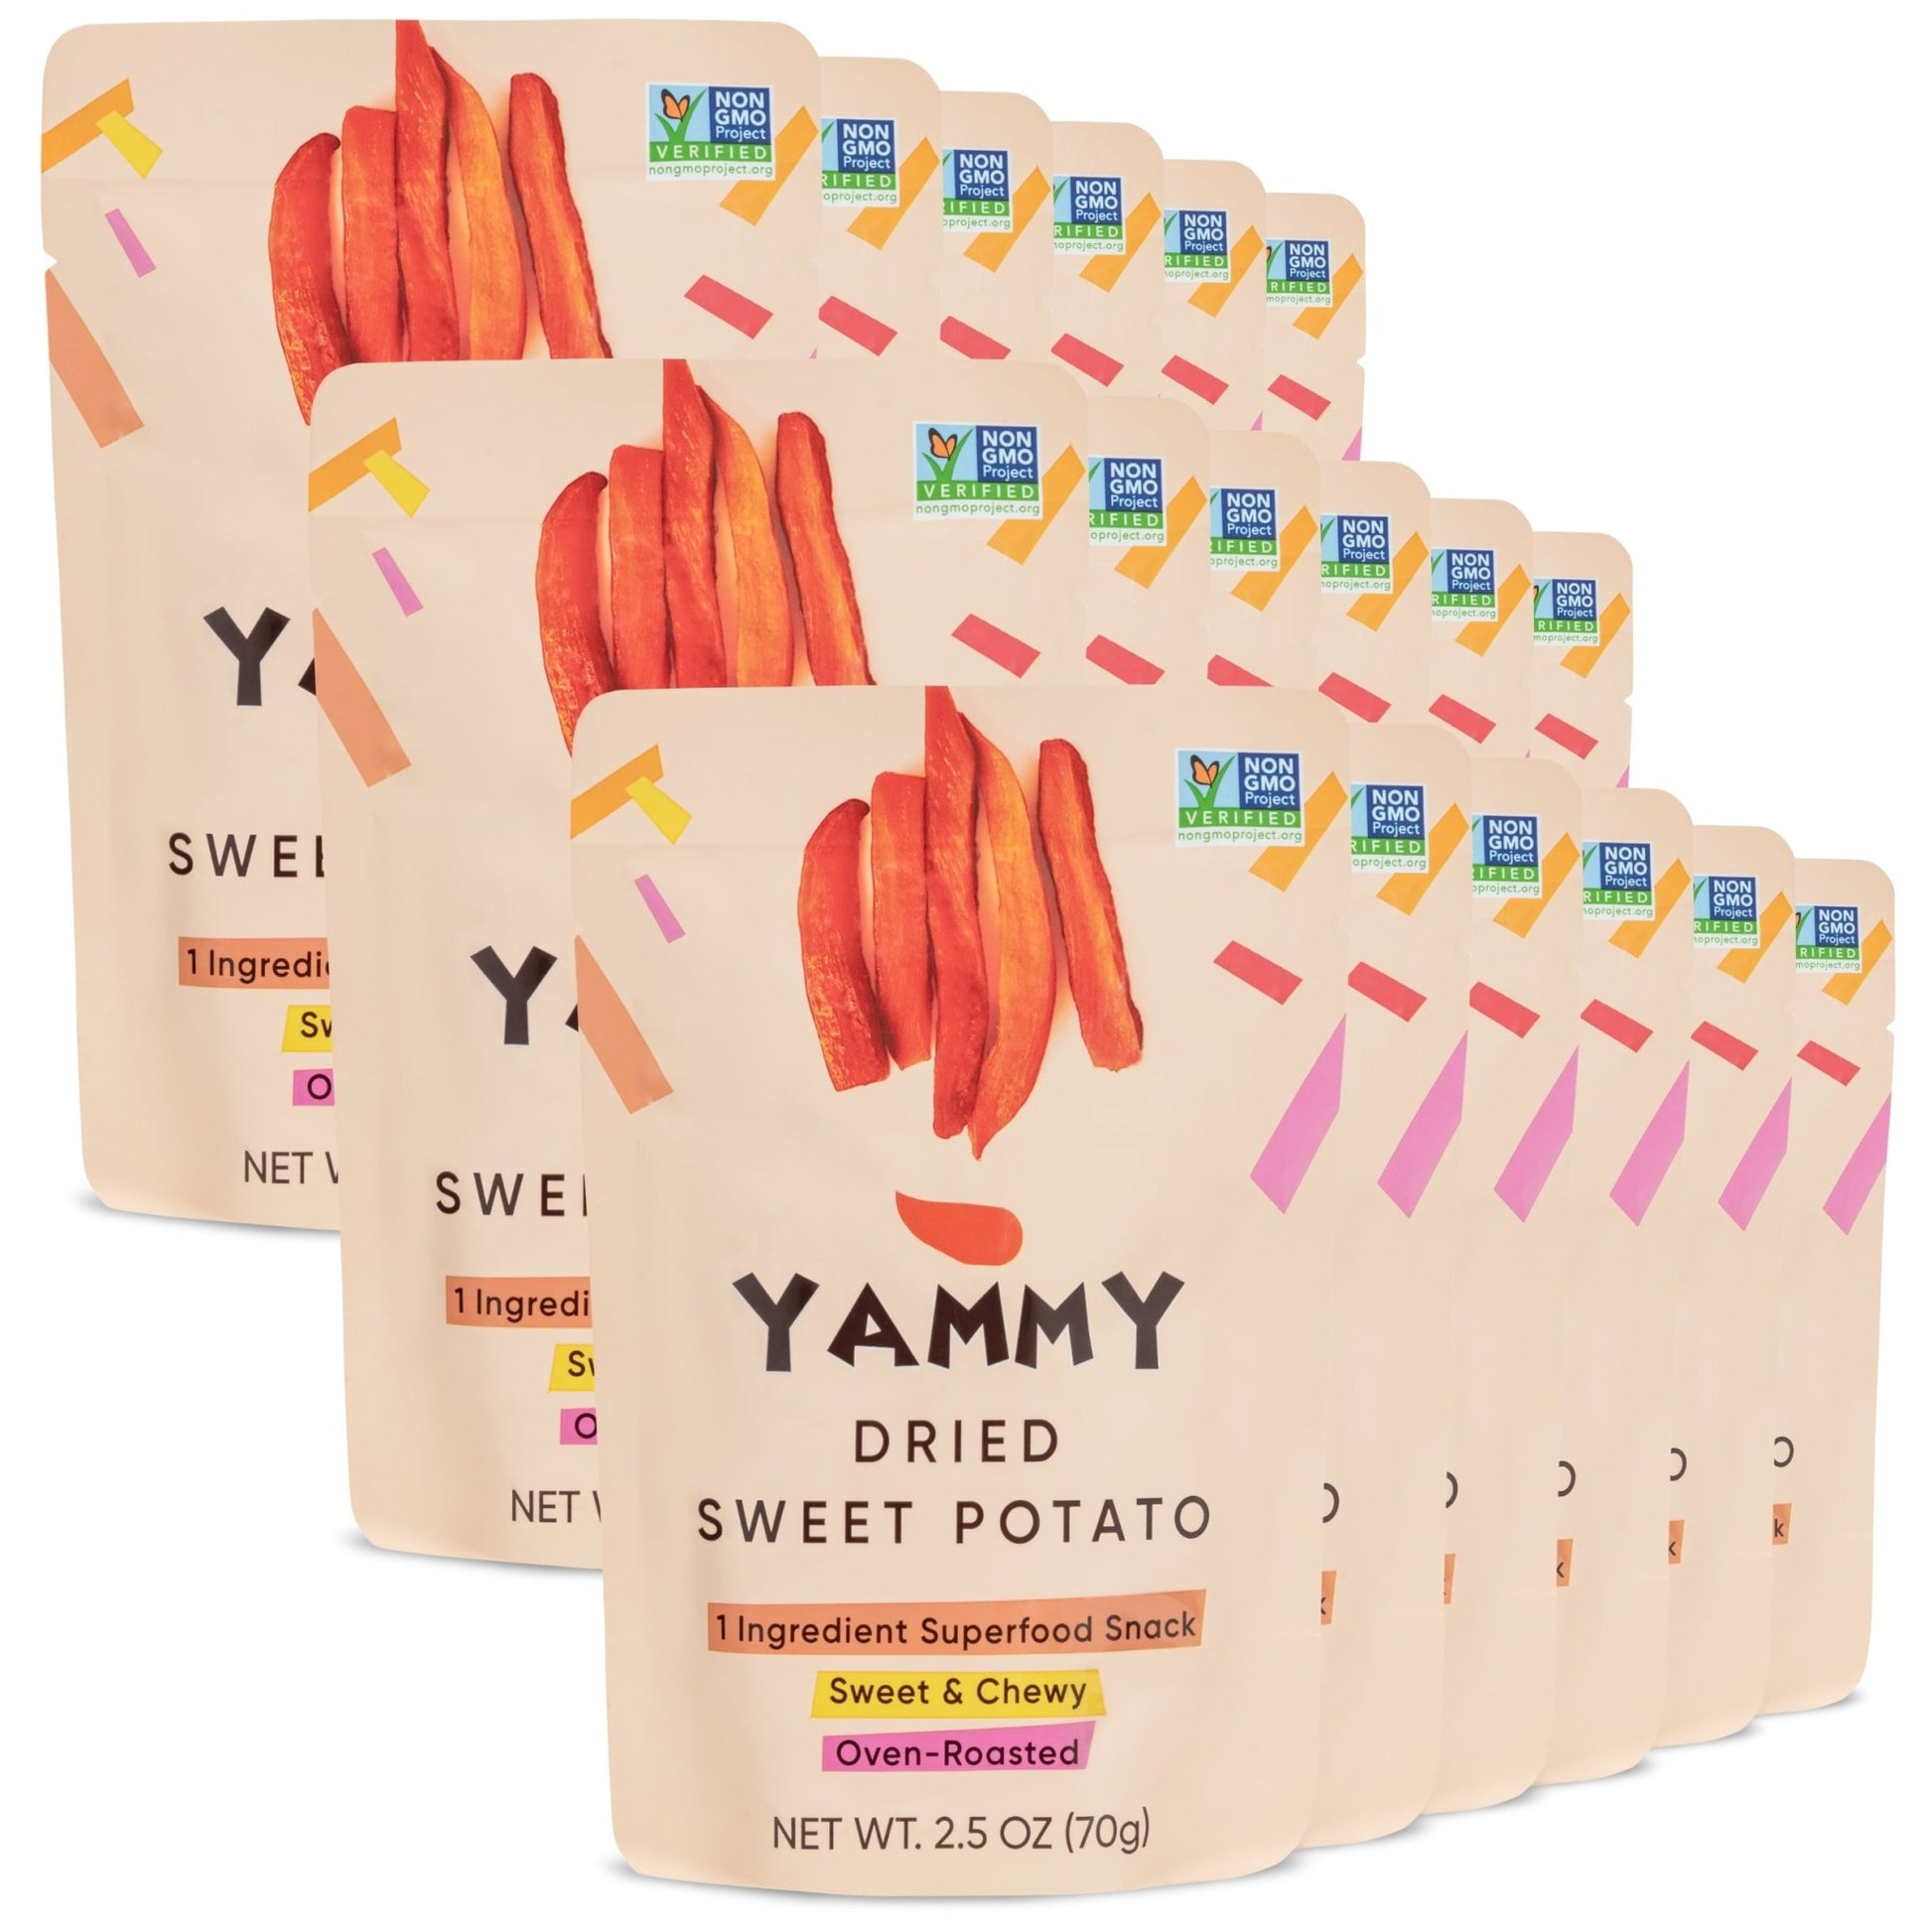 Yammy Dried Sweet Potato Sticks - Yammy 1 Ingredient Superfood Snacks